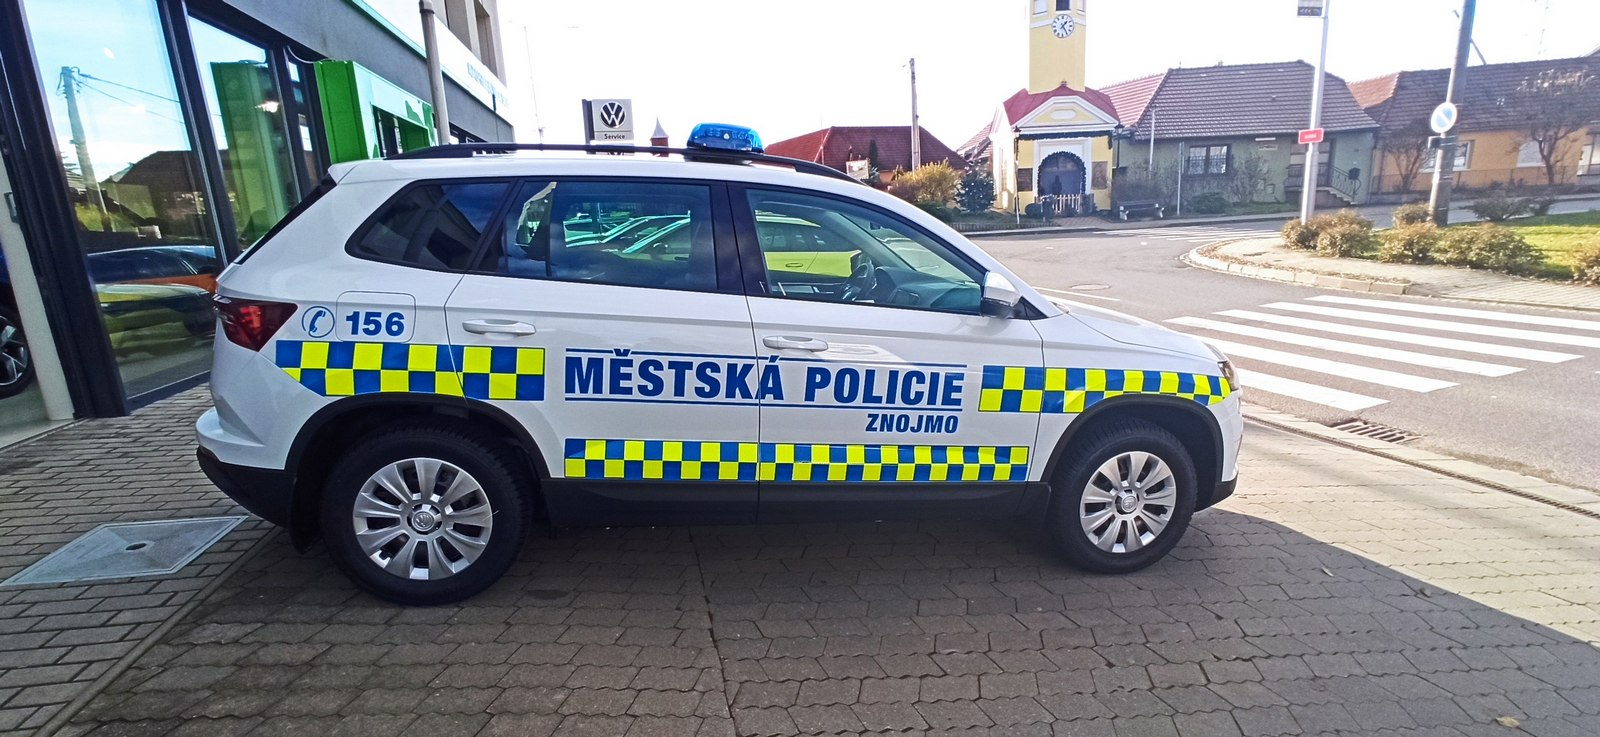 Městská policie ve Znojmě bude jezdit novým služebním vozidlem